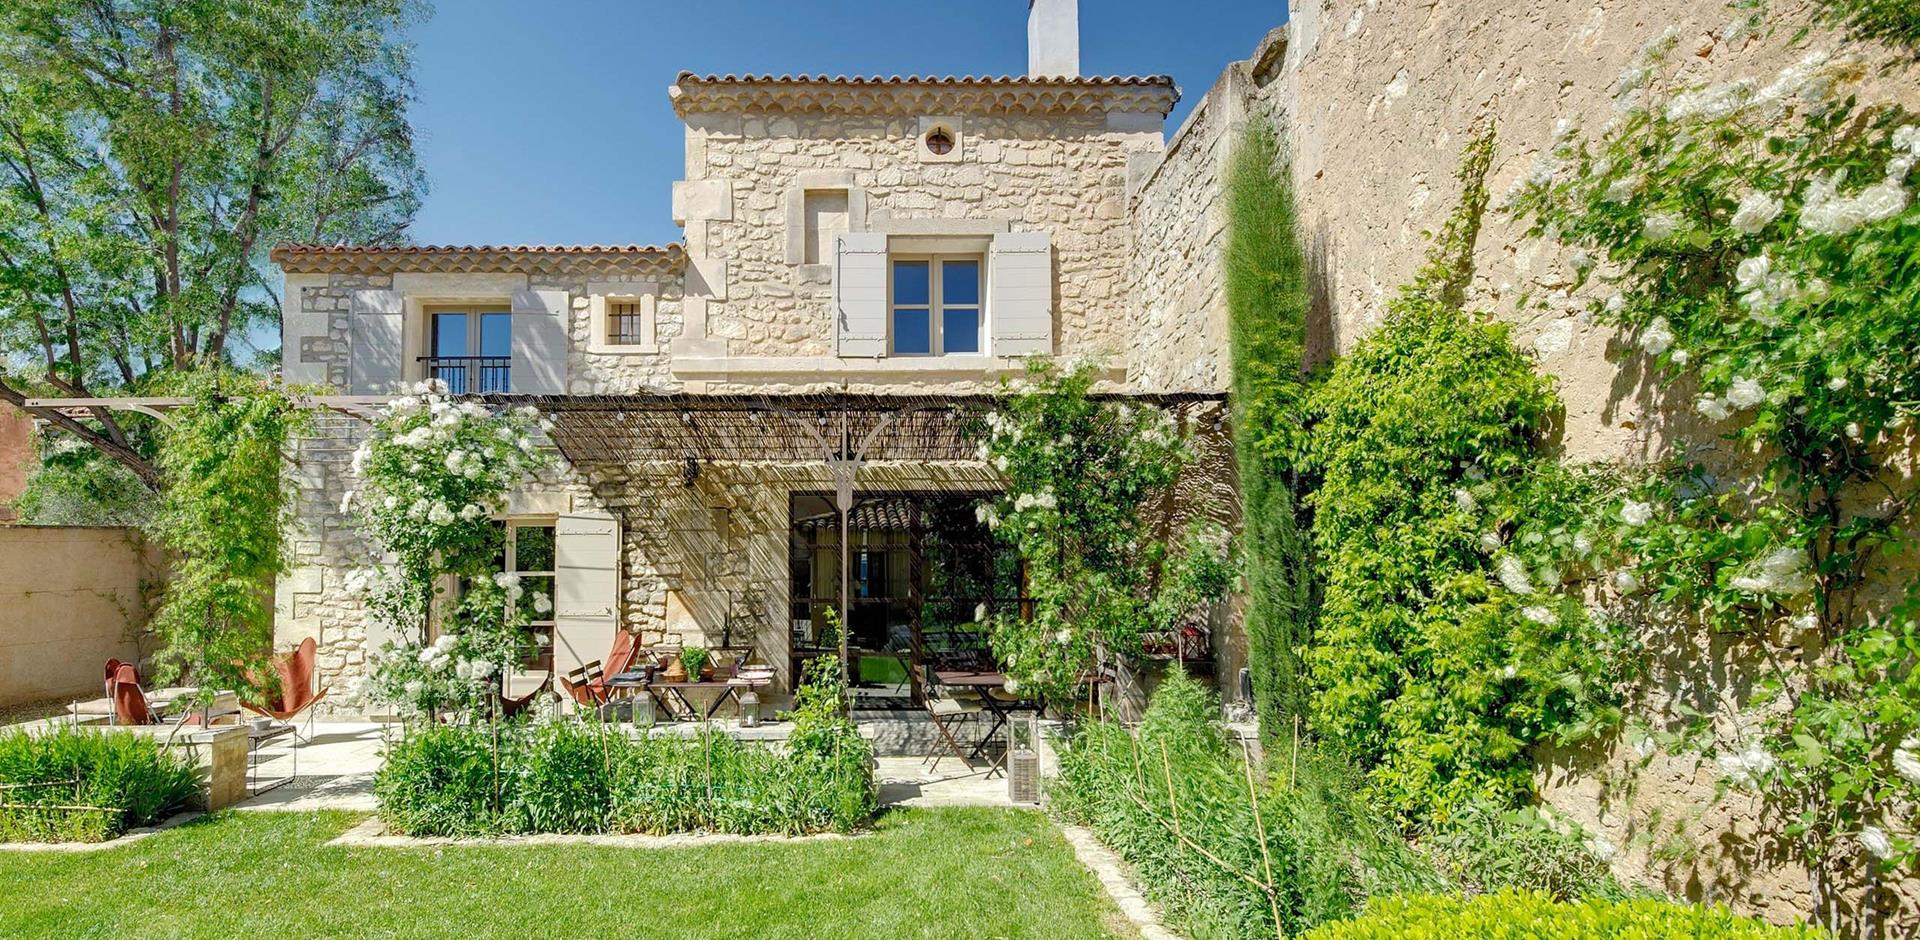 Exterior view, La Maison de Maussane, Provence.